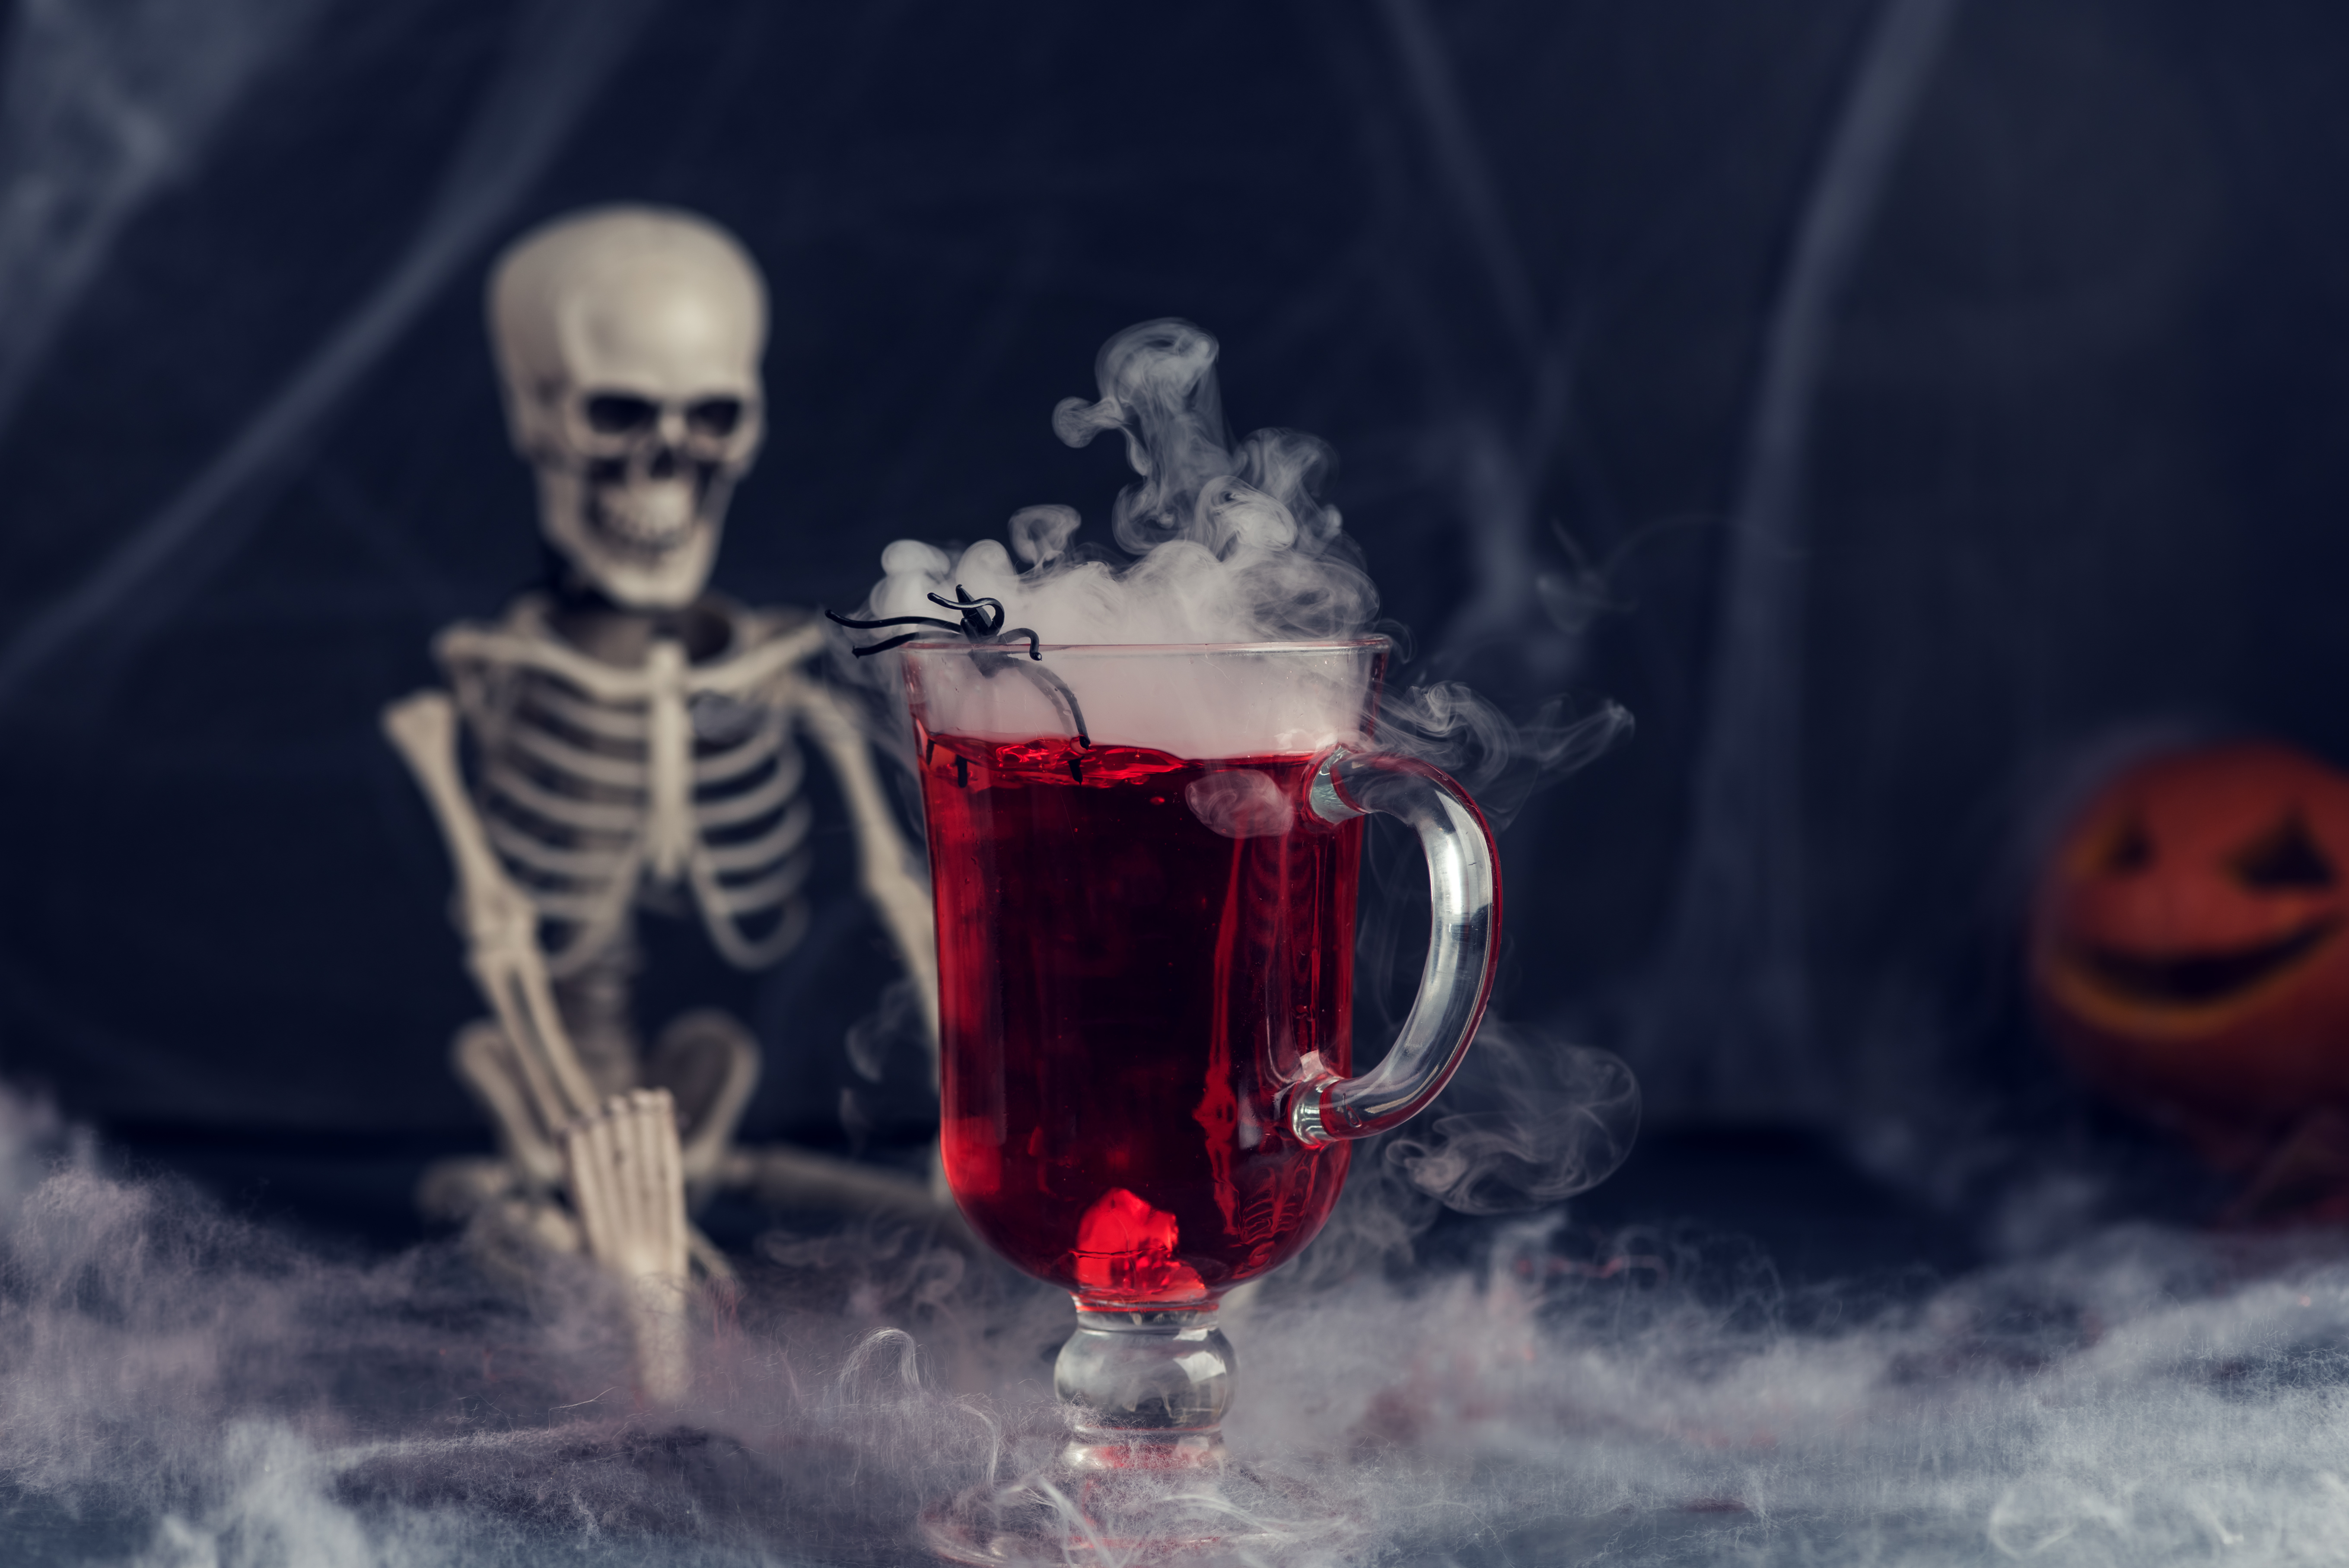 Spooky drink